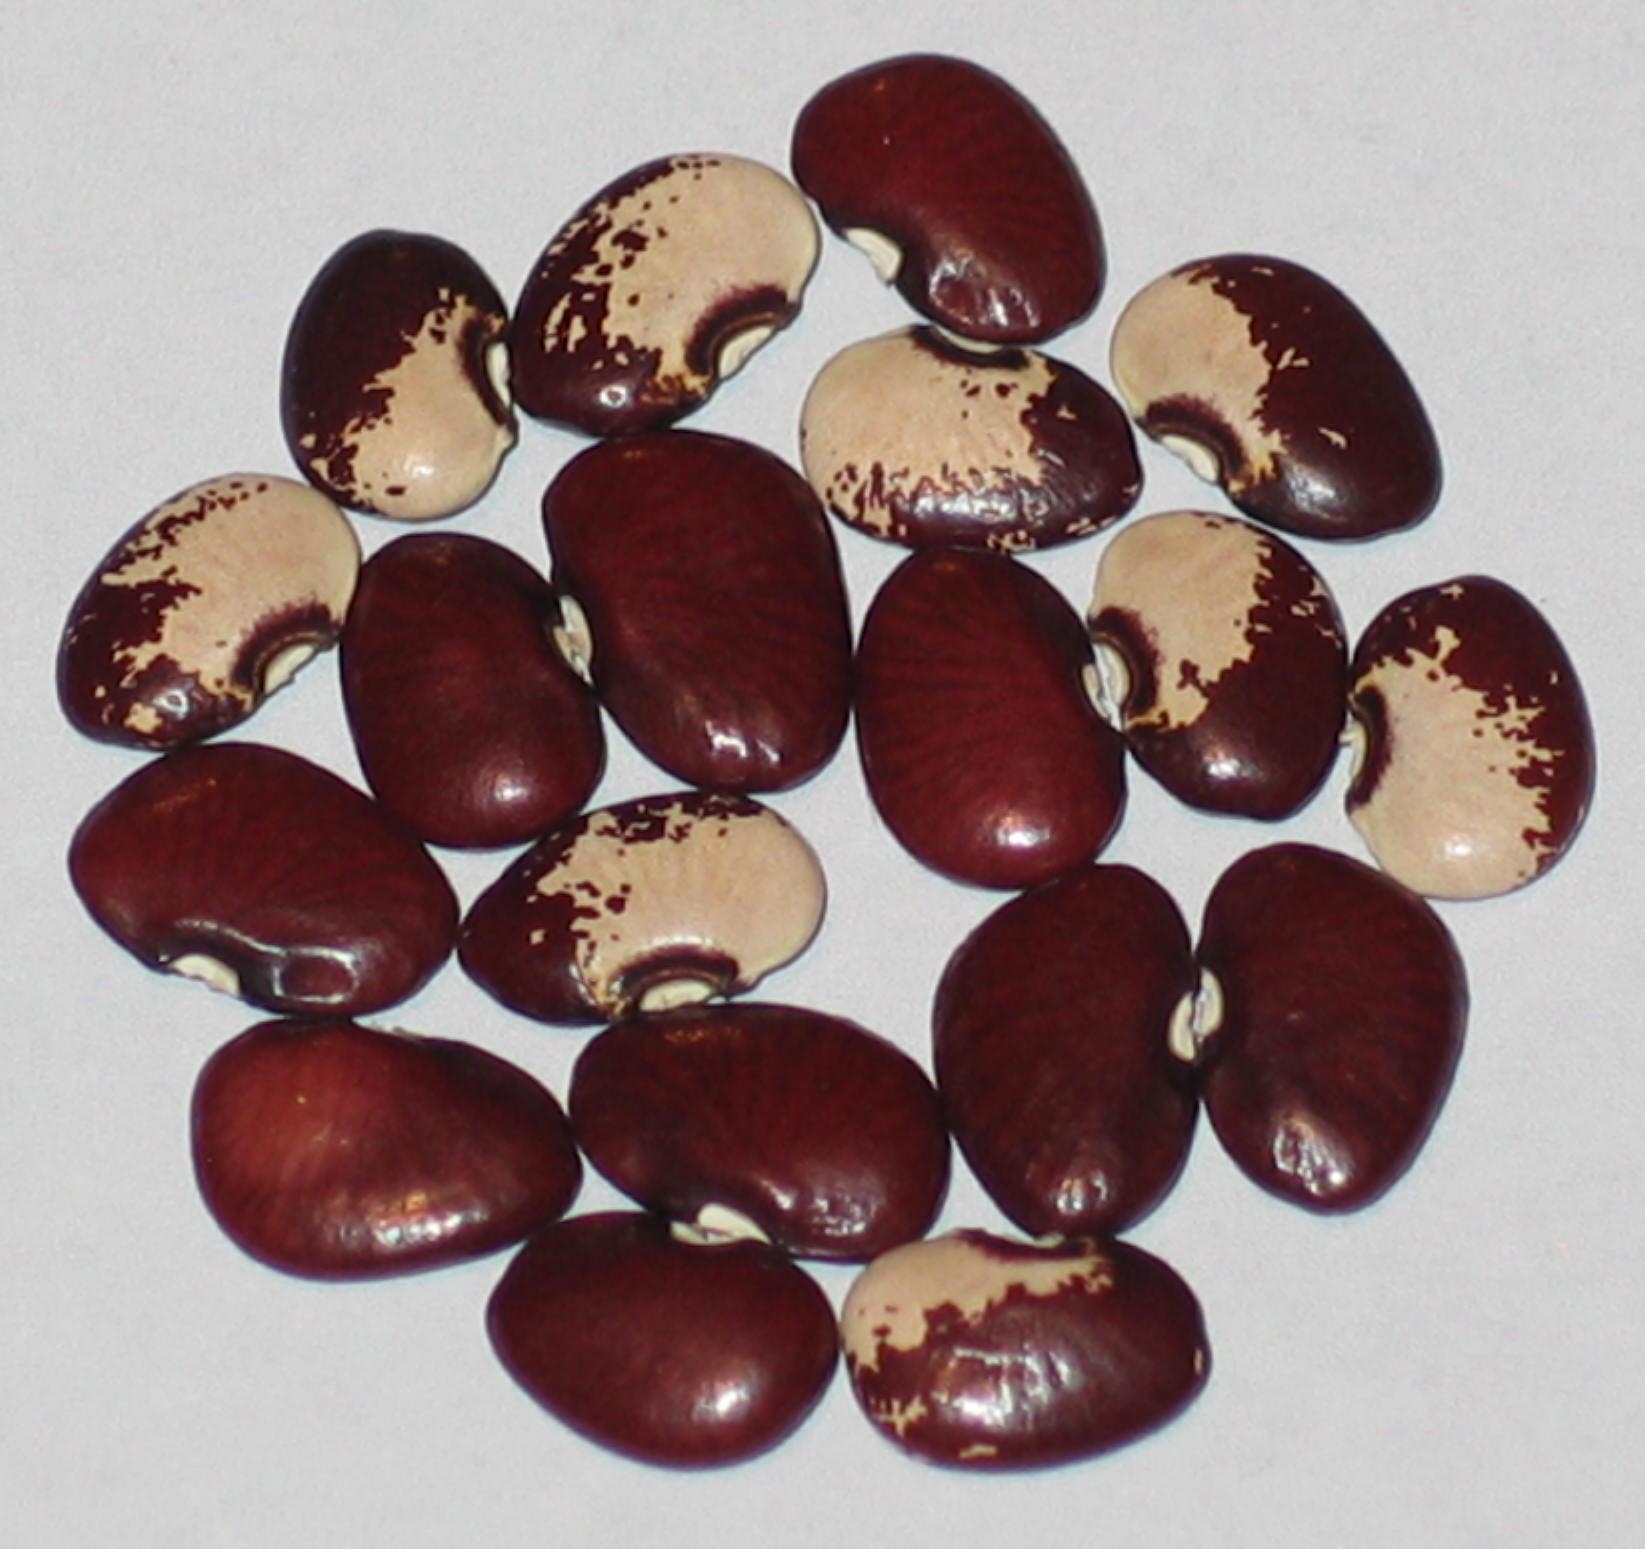 image of Lois Archer beans